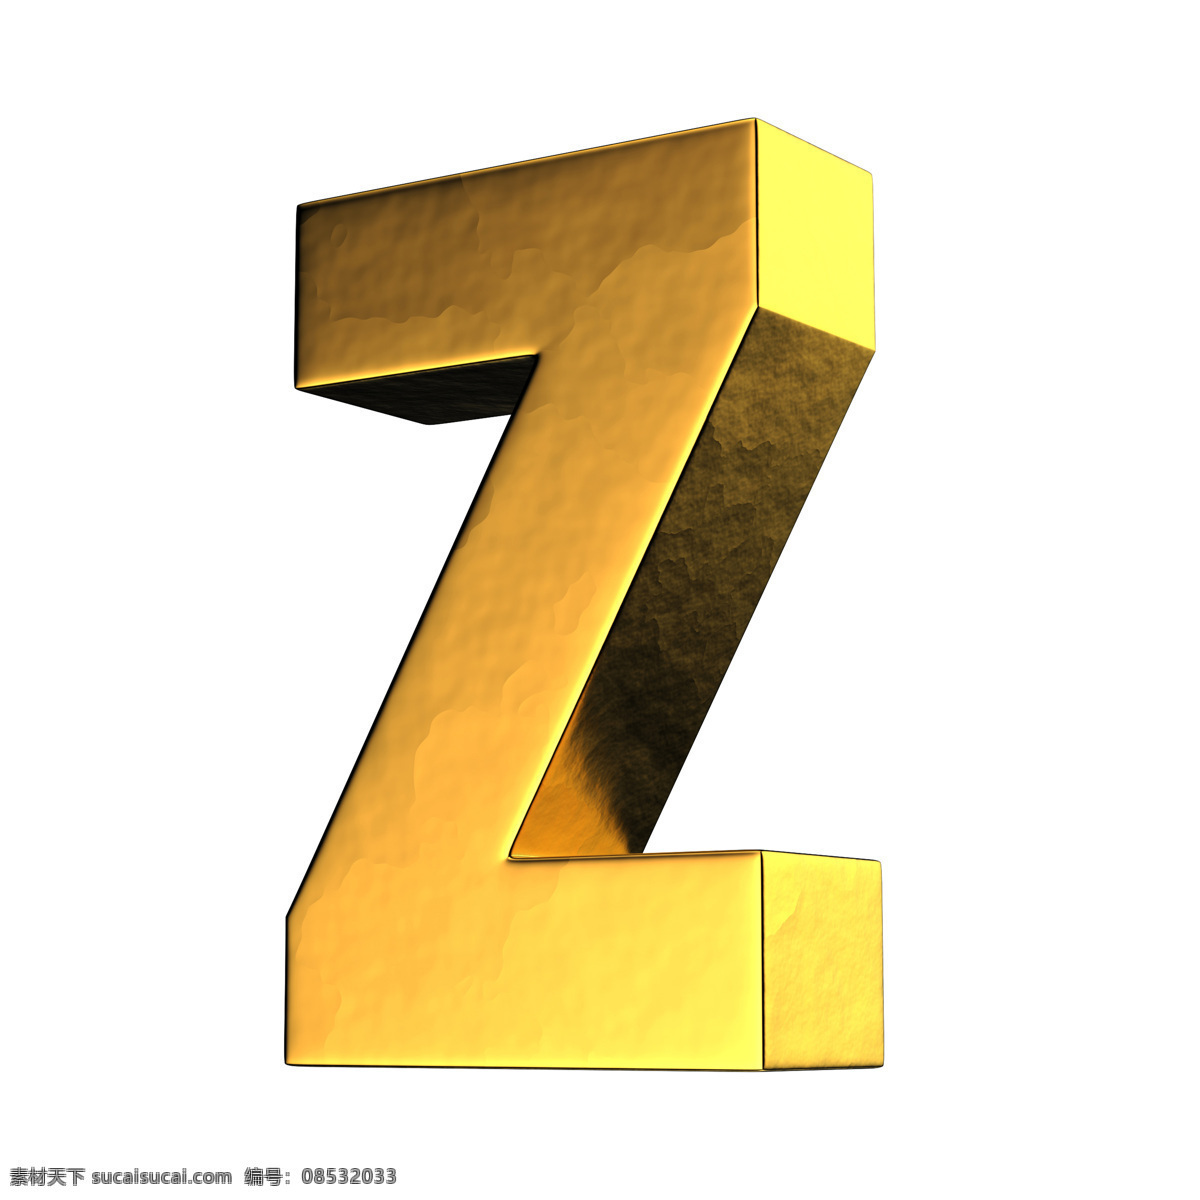 金色 金属 金属字母 时尚 质感 装饰 字母 设计素材 模板下载 3d立体字母 字母设计 数字主题 矢量图 艺术字